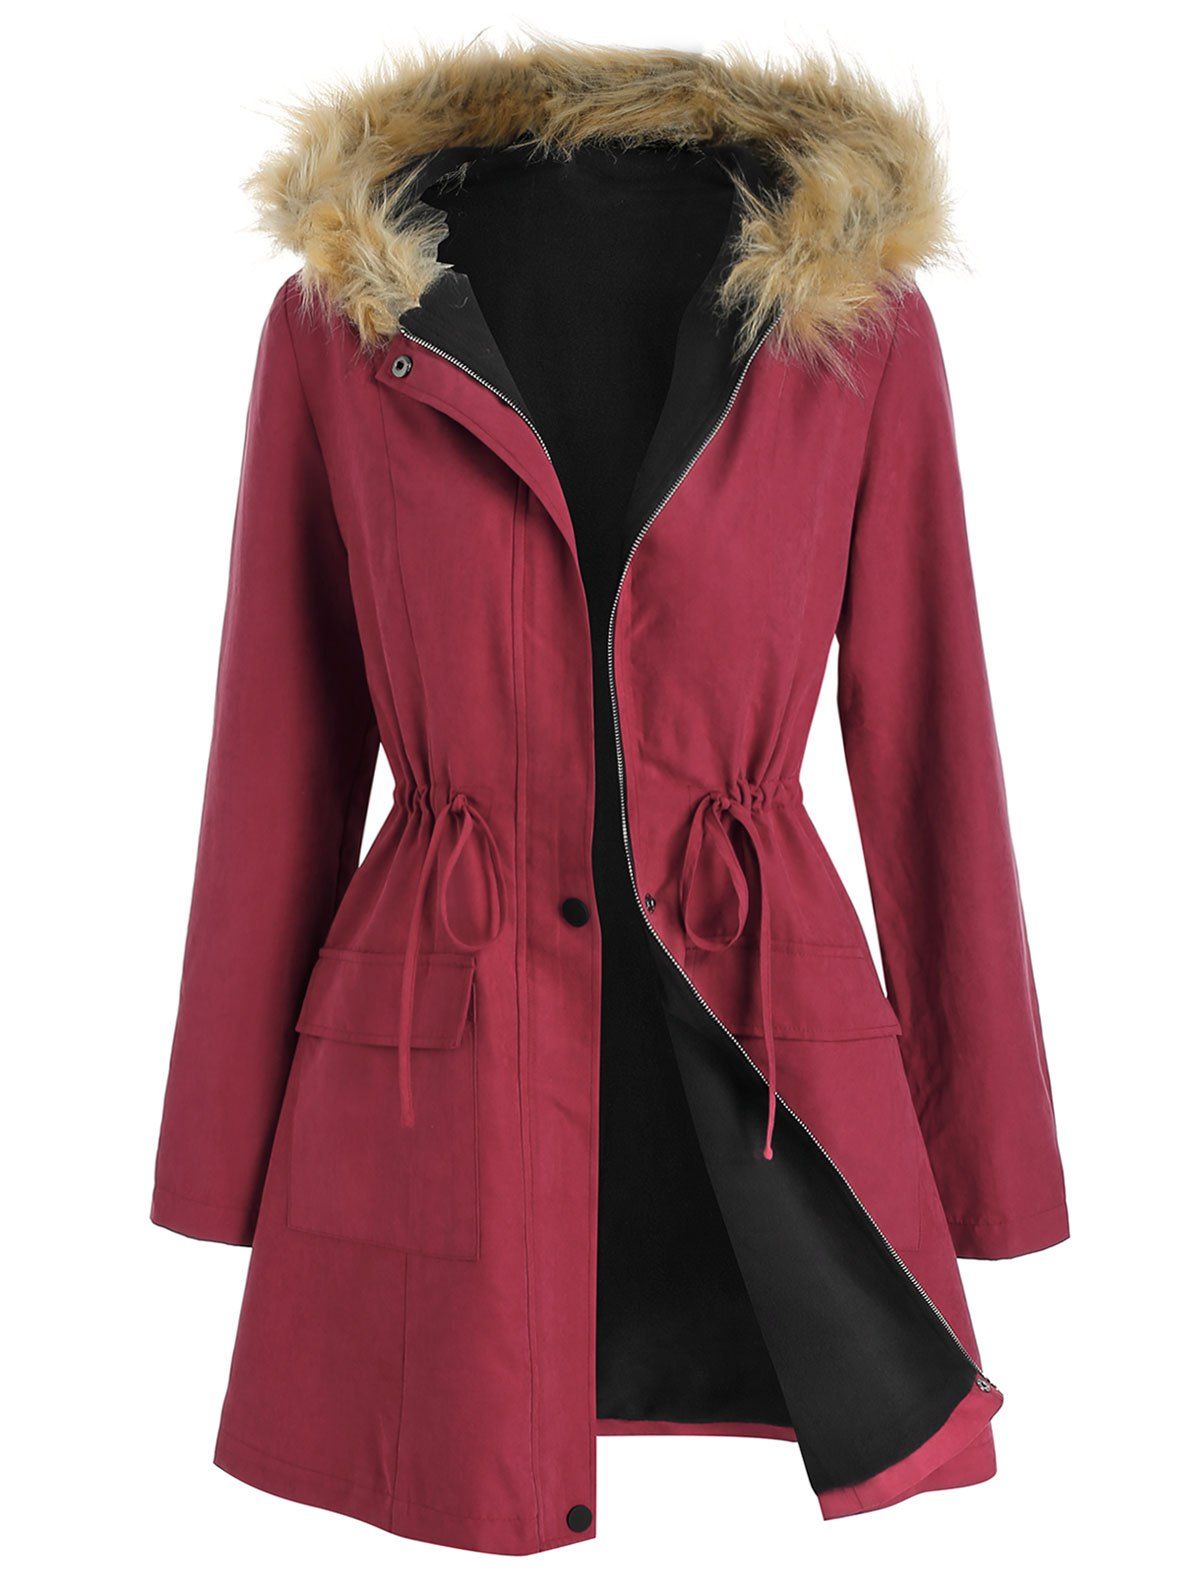 Manteau Panneau en Fausse Fourrure Taille à Cordon - Rouge Vineux XL